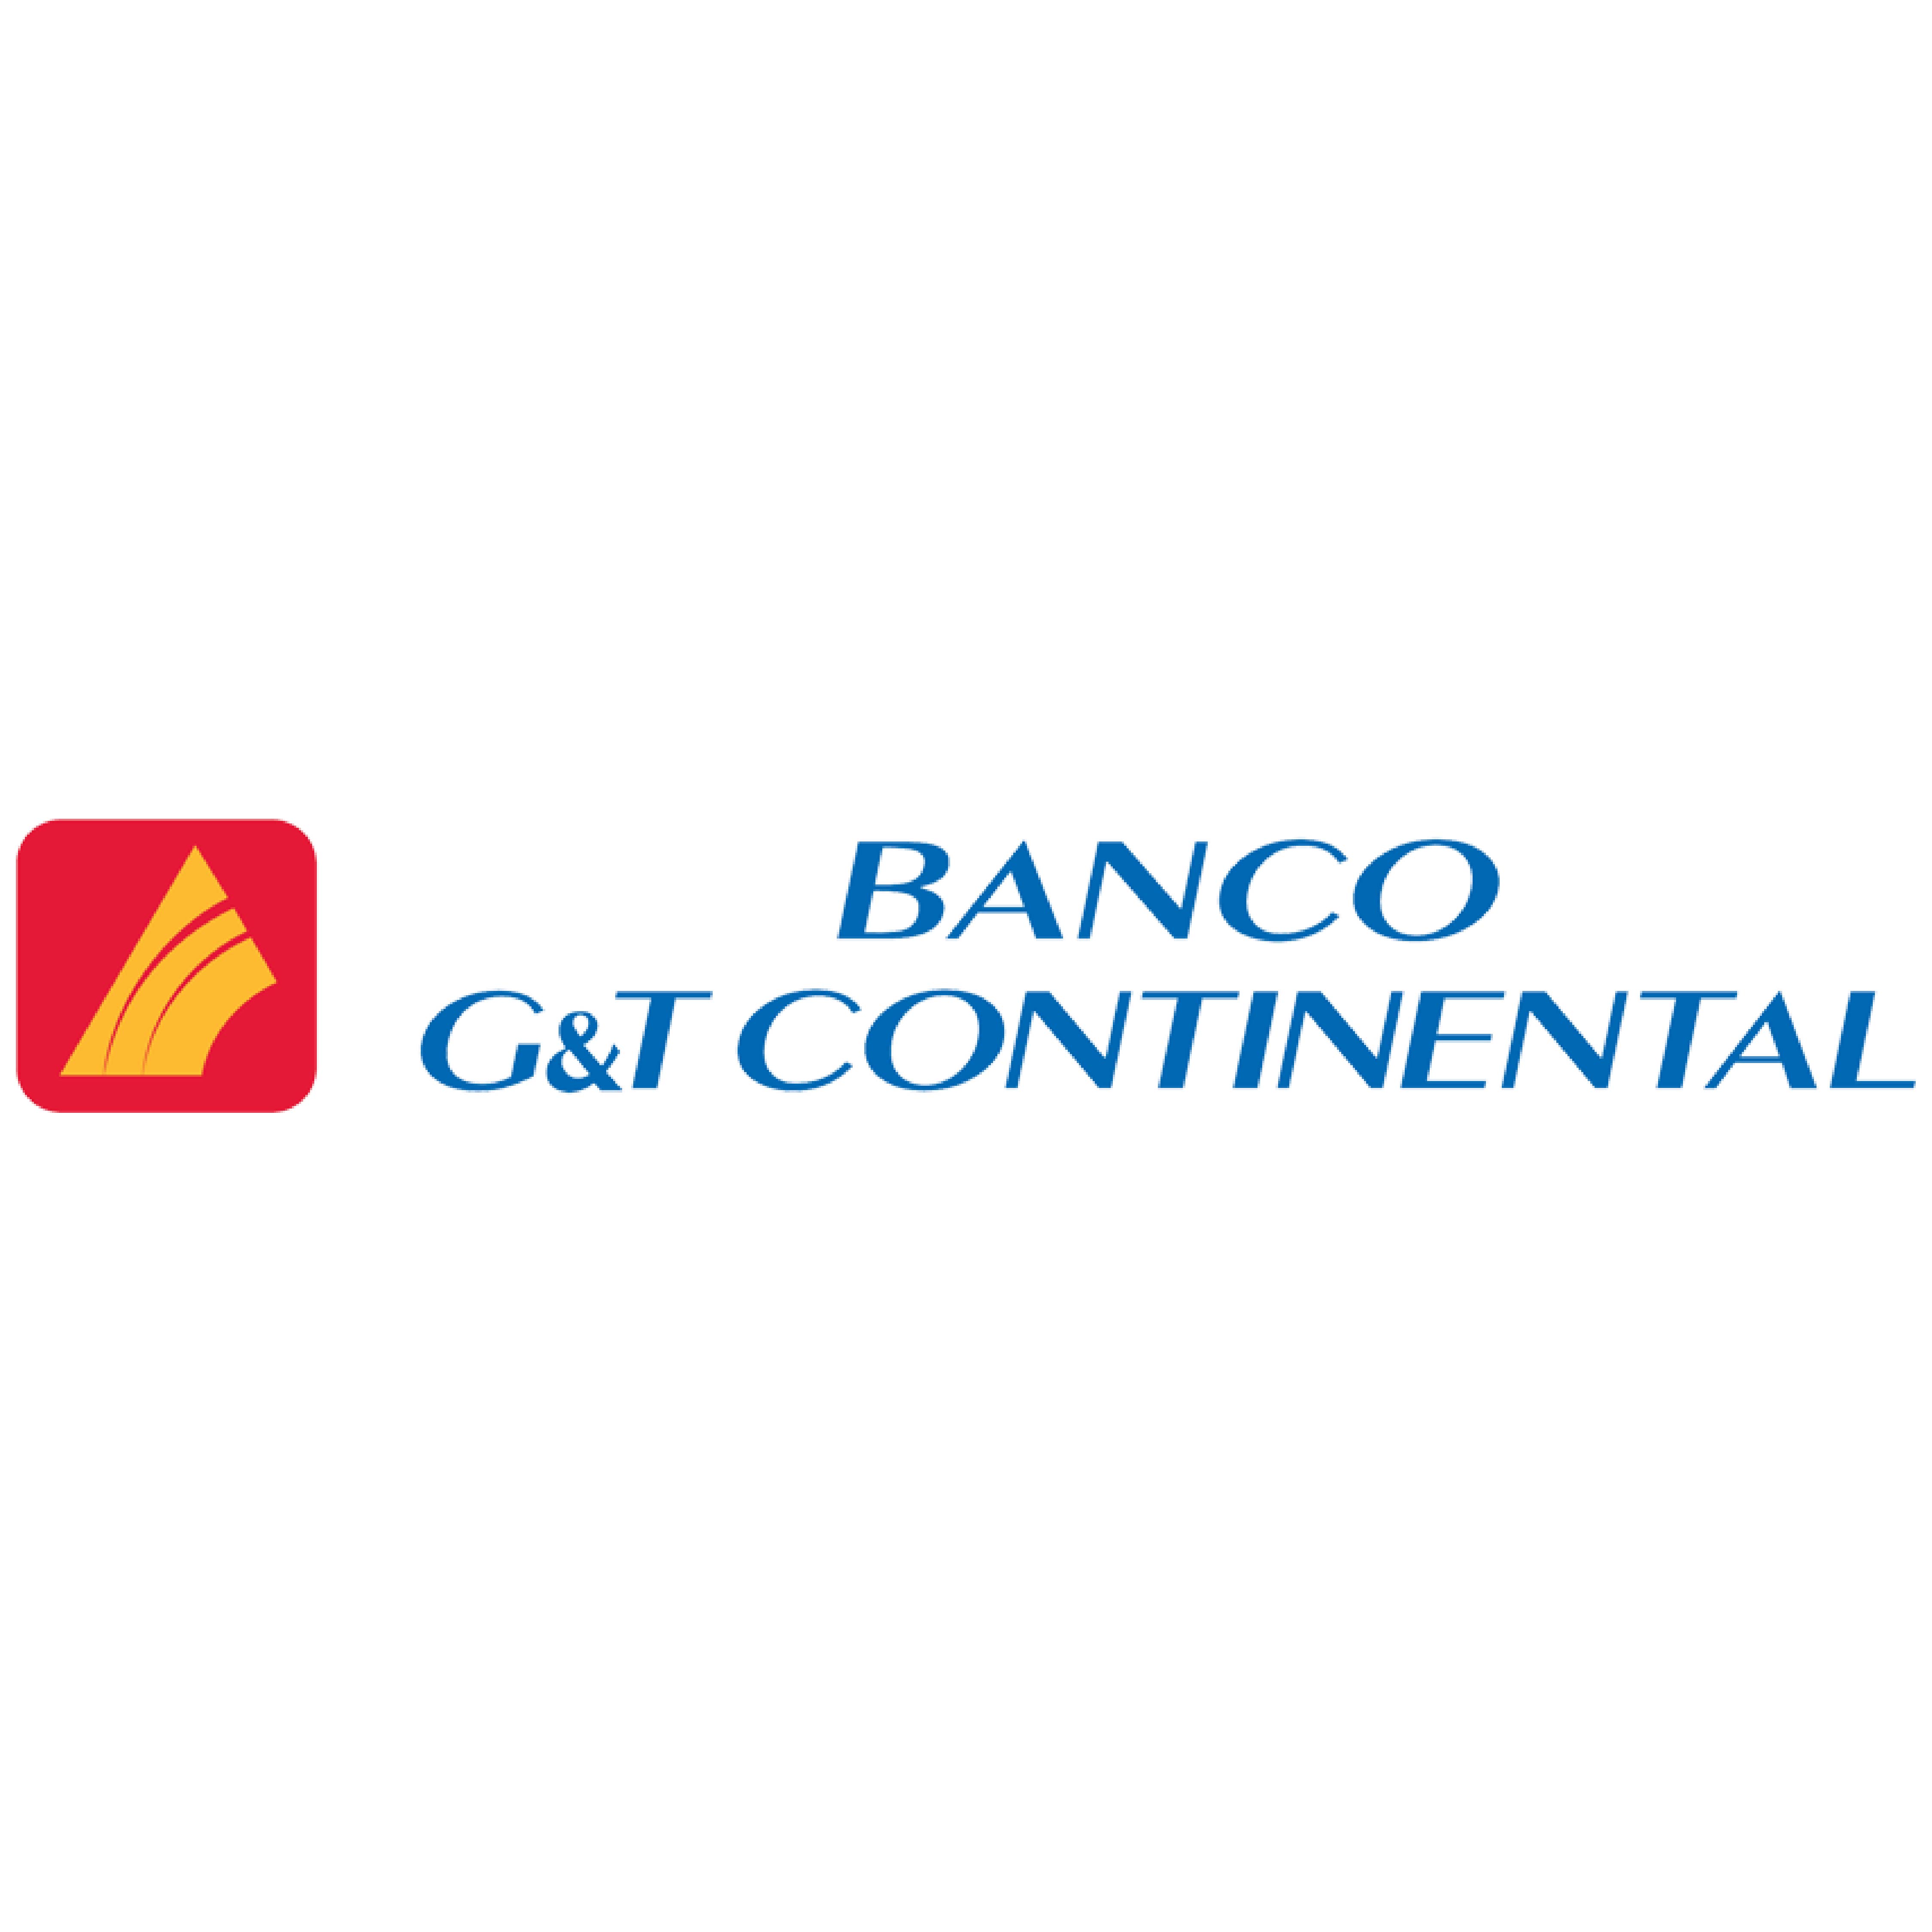 Cajero Banco G&T Continental